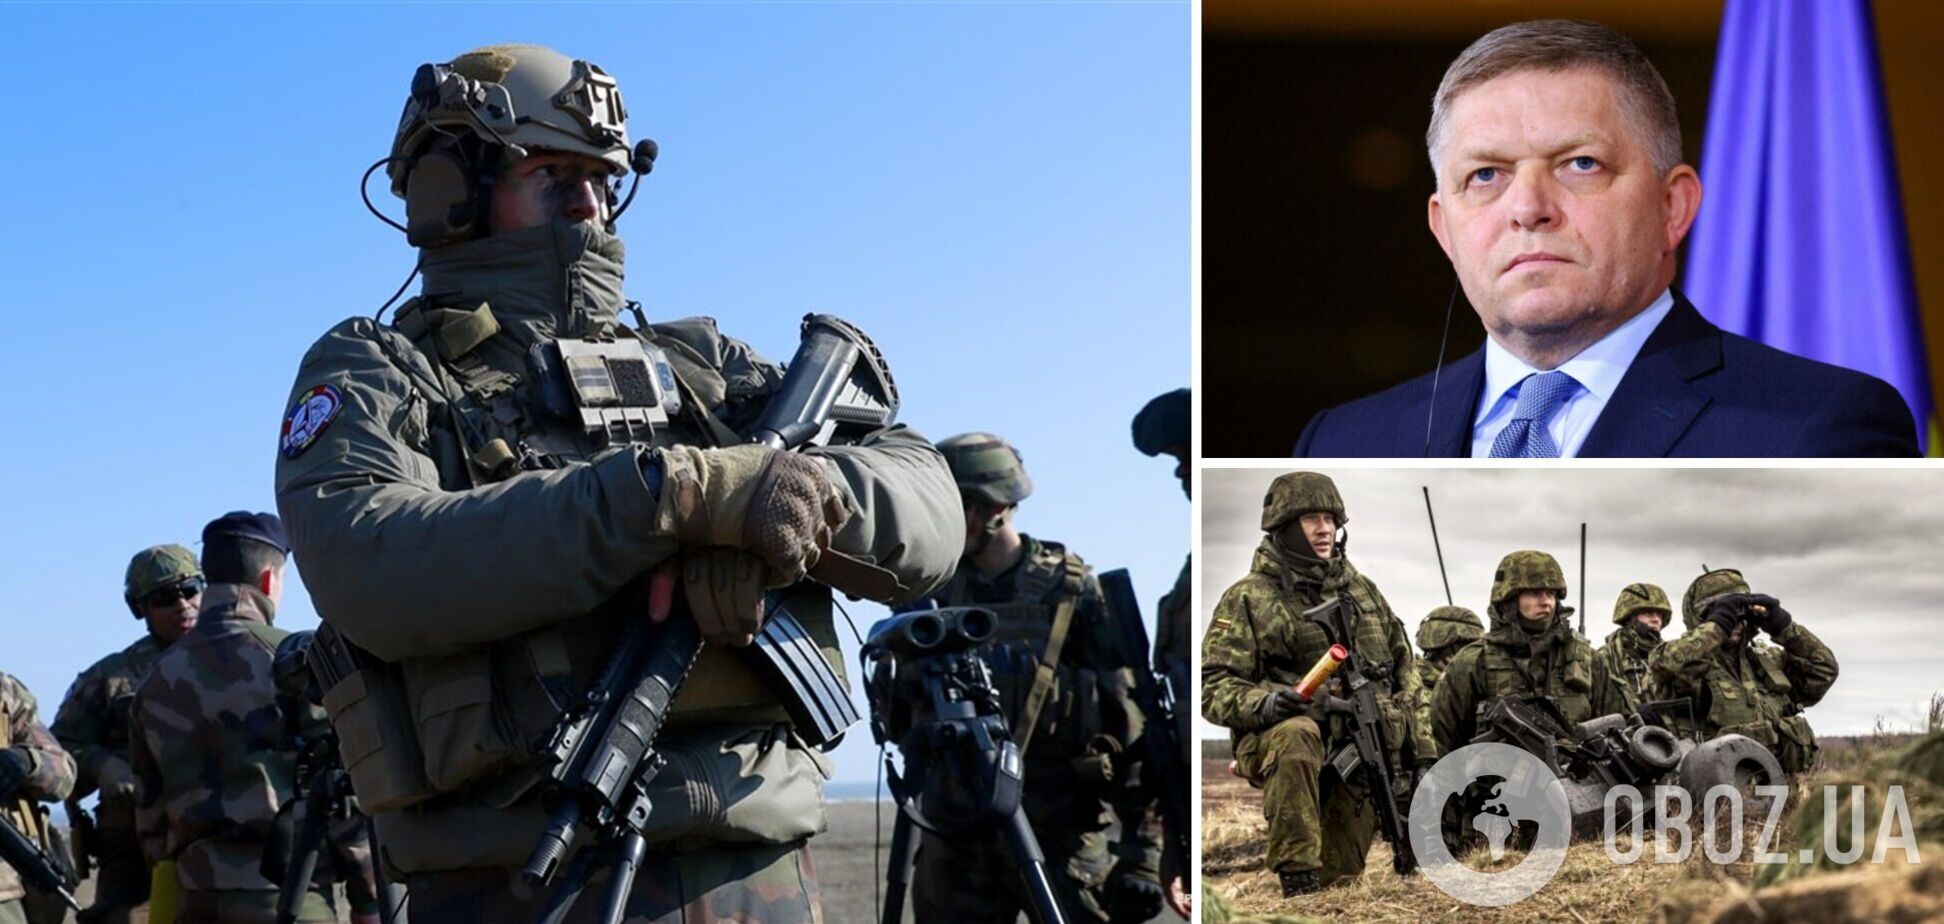 Размещение войск партнеров на нашей территории: Украина может предстать перед очень непростым выбором